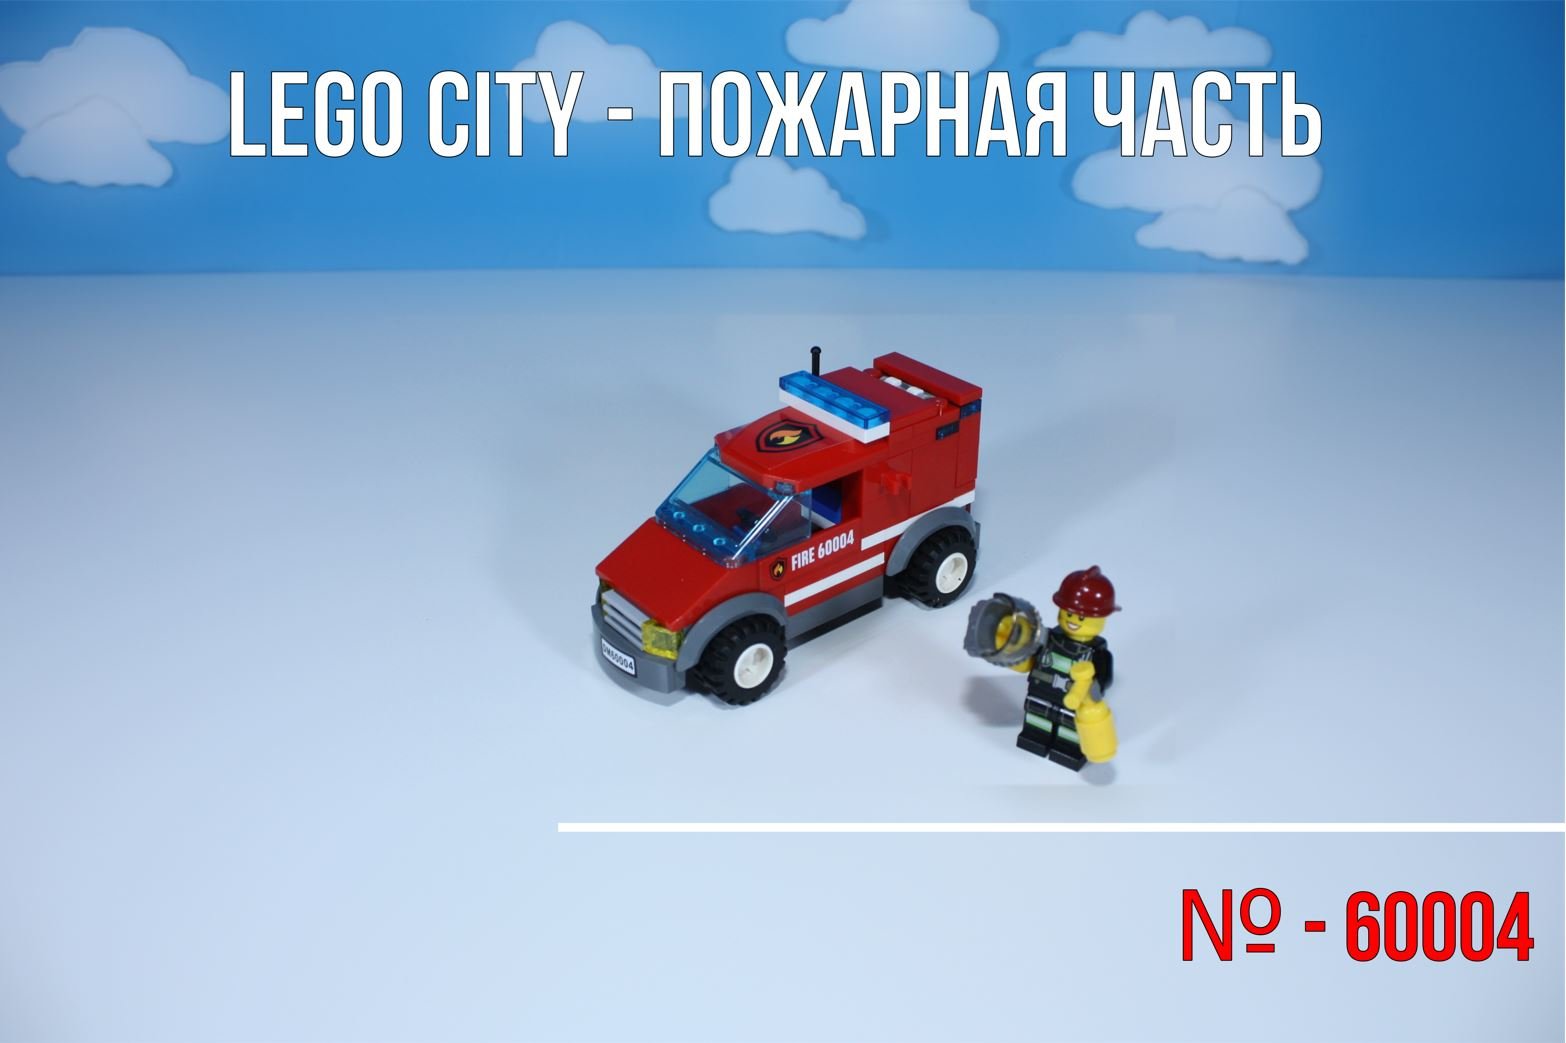 Lego city -60004- Пожарная часть - Пожарная машина (1 из 5)